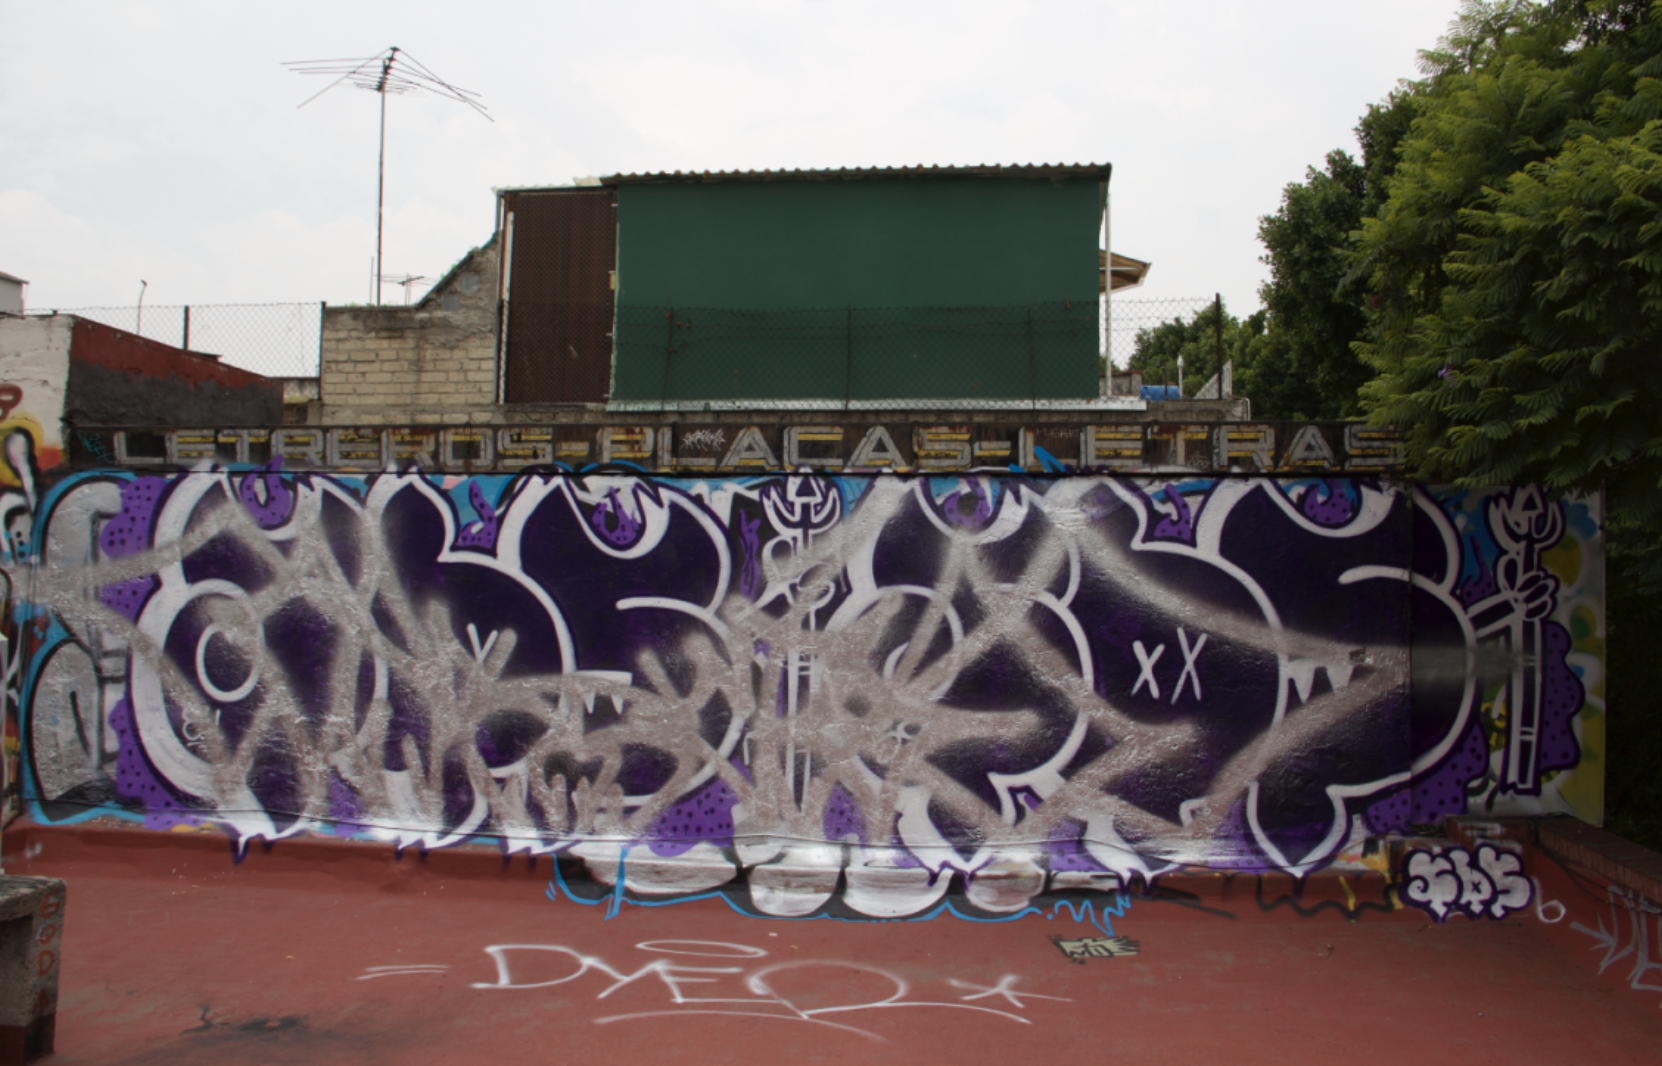 ADICTO – Graffiti Playground